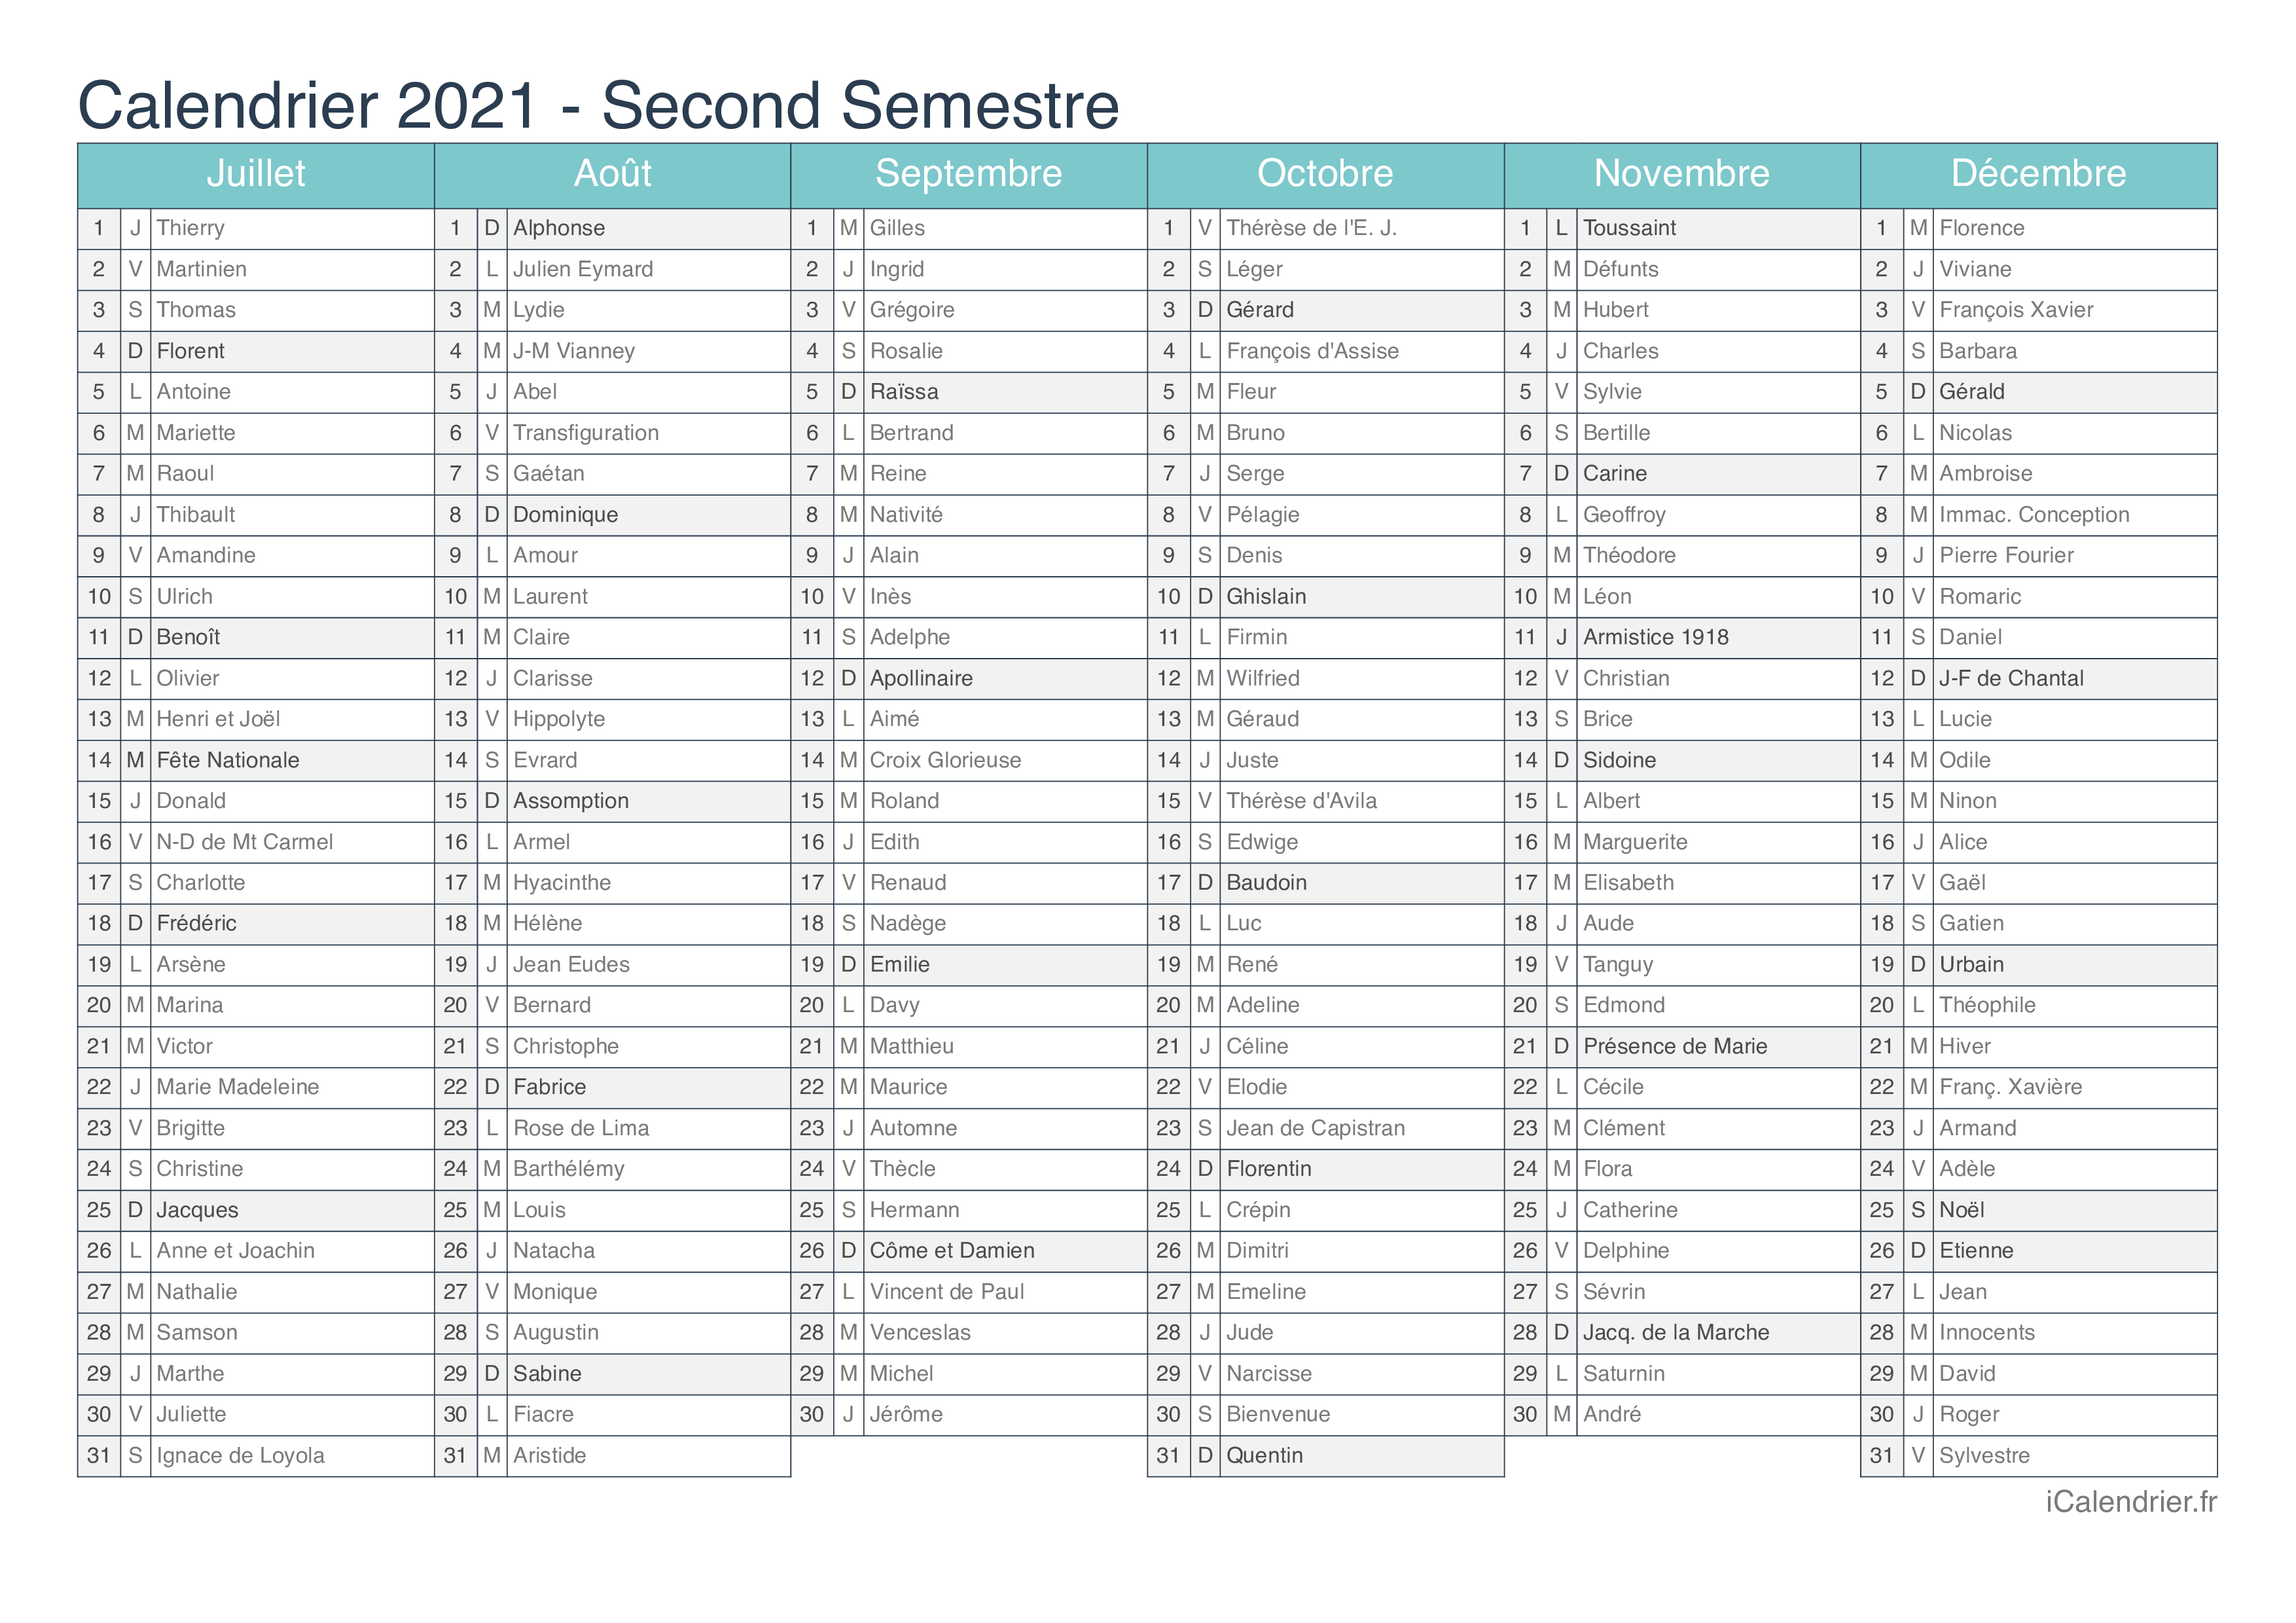 Calendrier 2021 Avec Les Saints Calendrier 2021 à imprimer PDF et Excel   iCalendrier